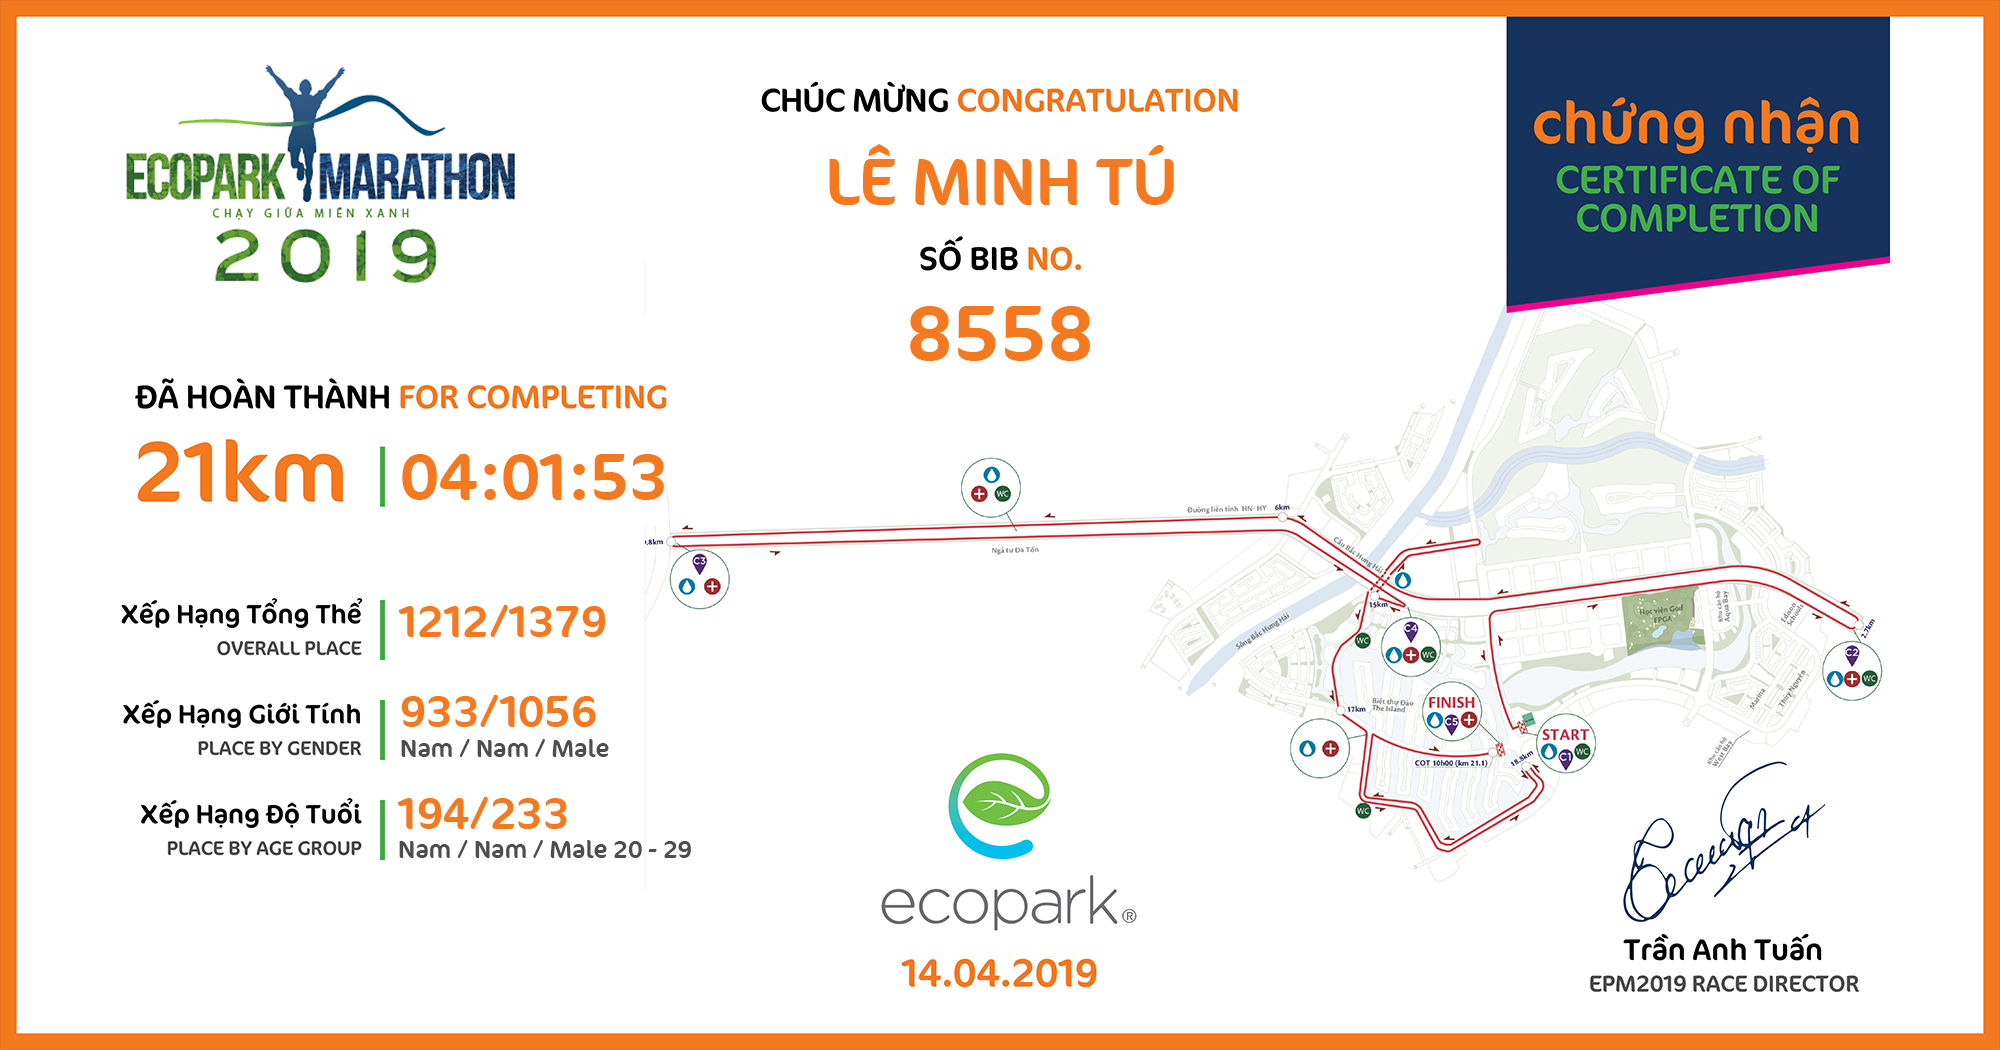 8558 - Lê Minh Tú